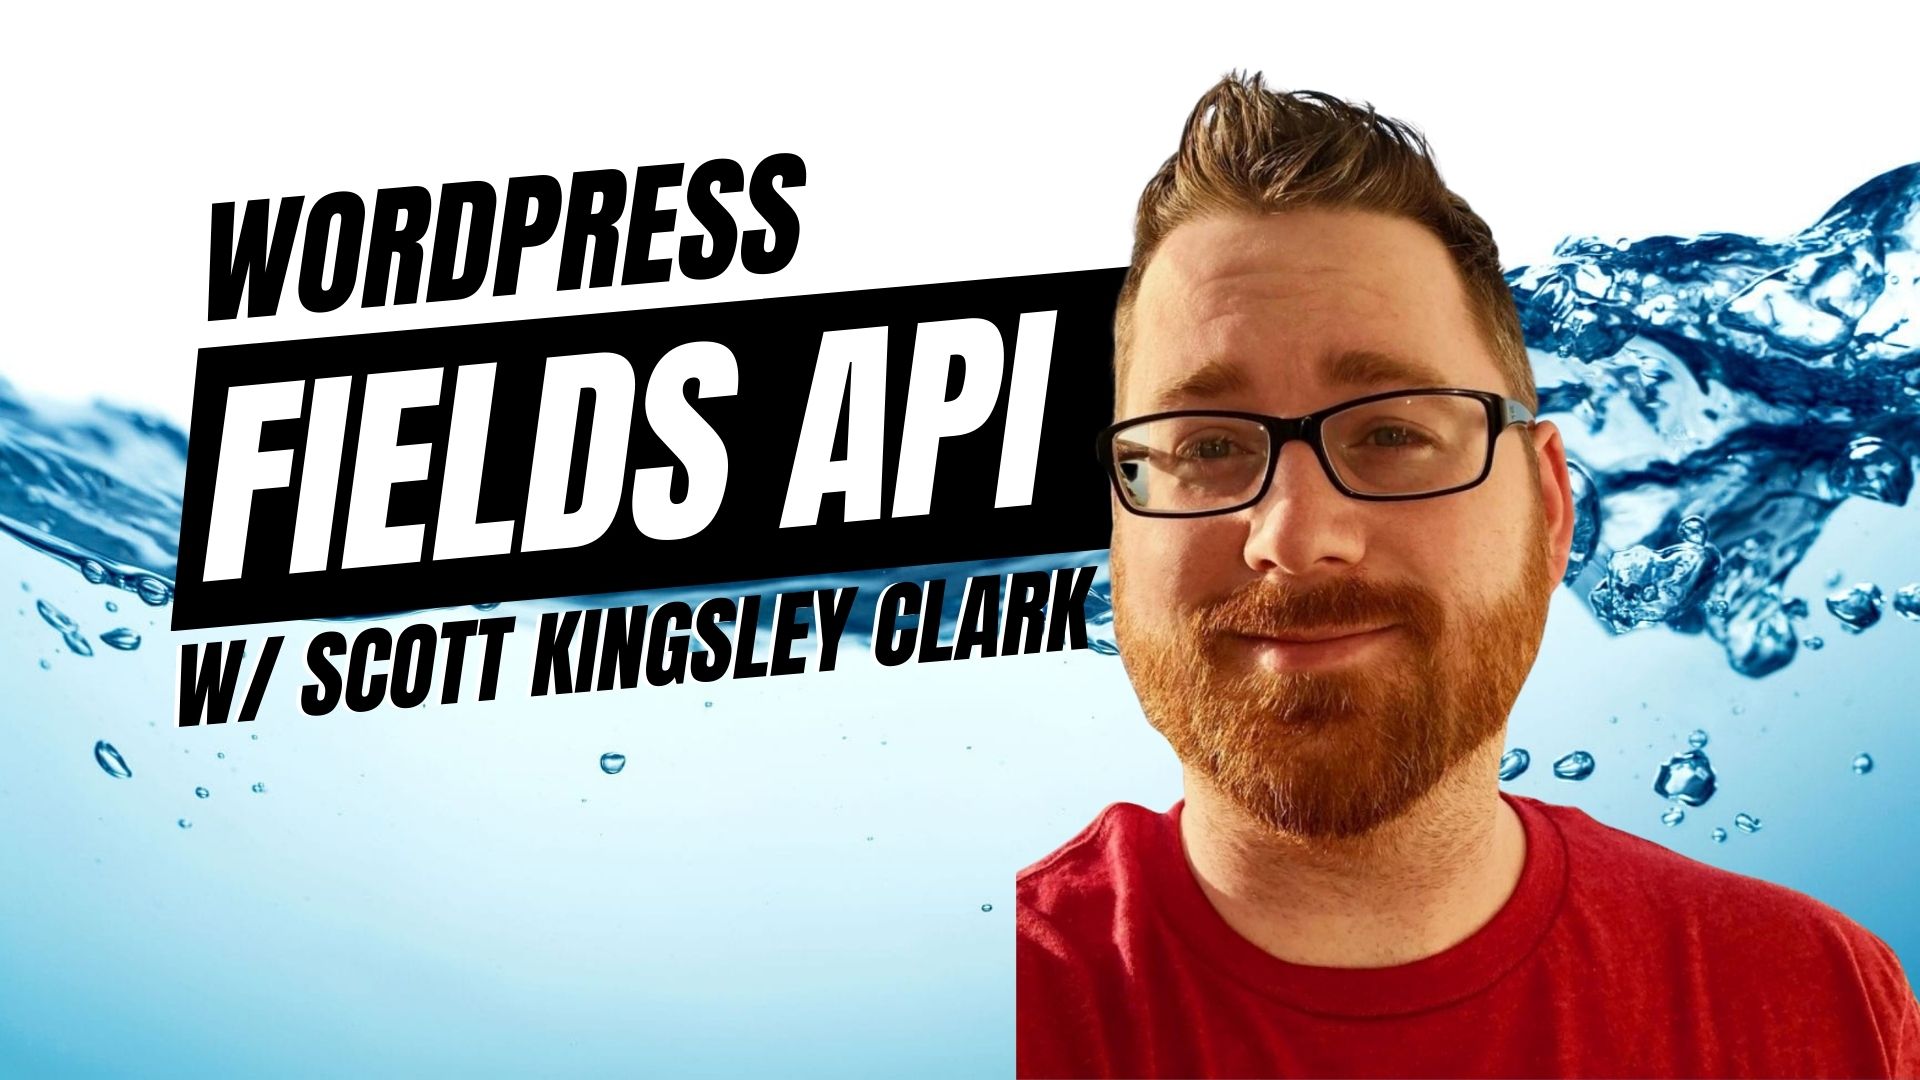 EP443 – WordPress Fields API with Scott Kingsley Clark